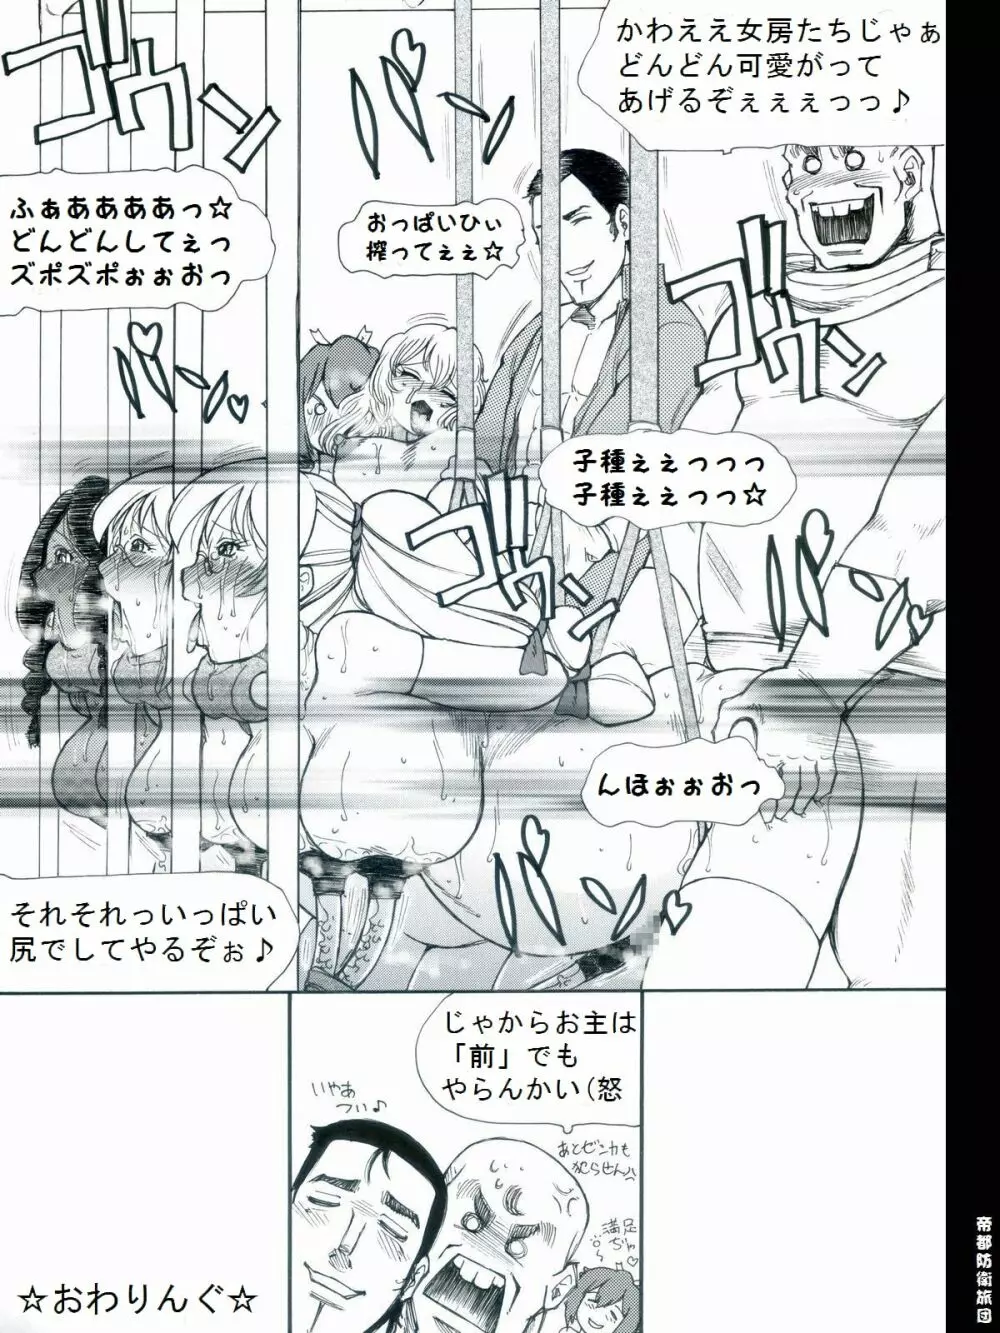 [帝都防衛旅団] RTKBOOK 9-3 「M○Xいぢり(3) 『PANPAN-MAN』」 - page24